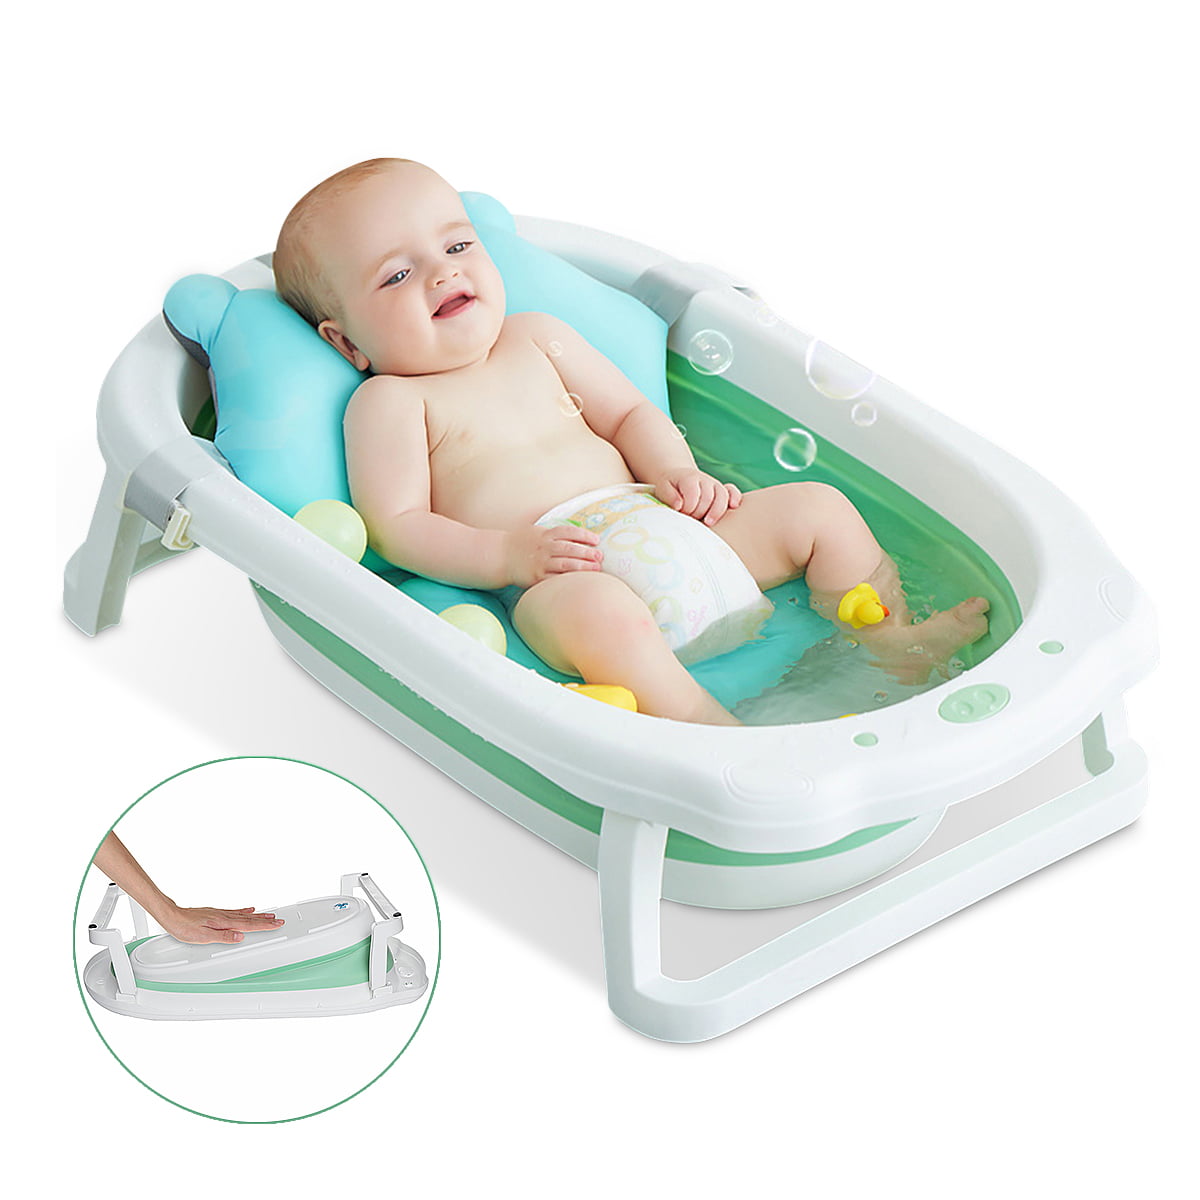 Folding Baby bathtub Infant Newborn Bath Bathing Safety flat Foldable Tub 